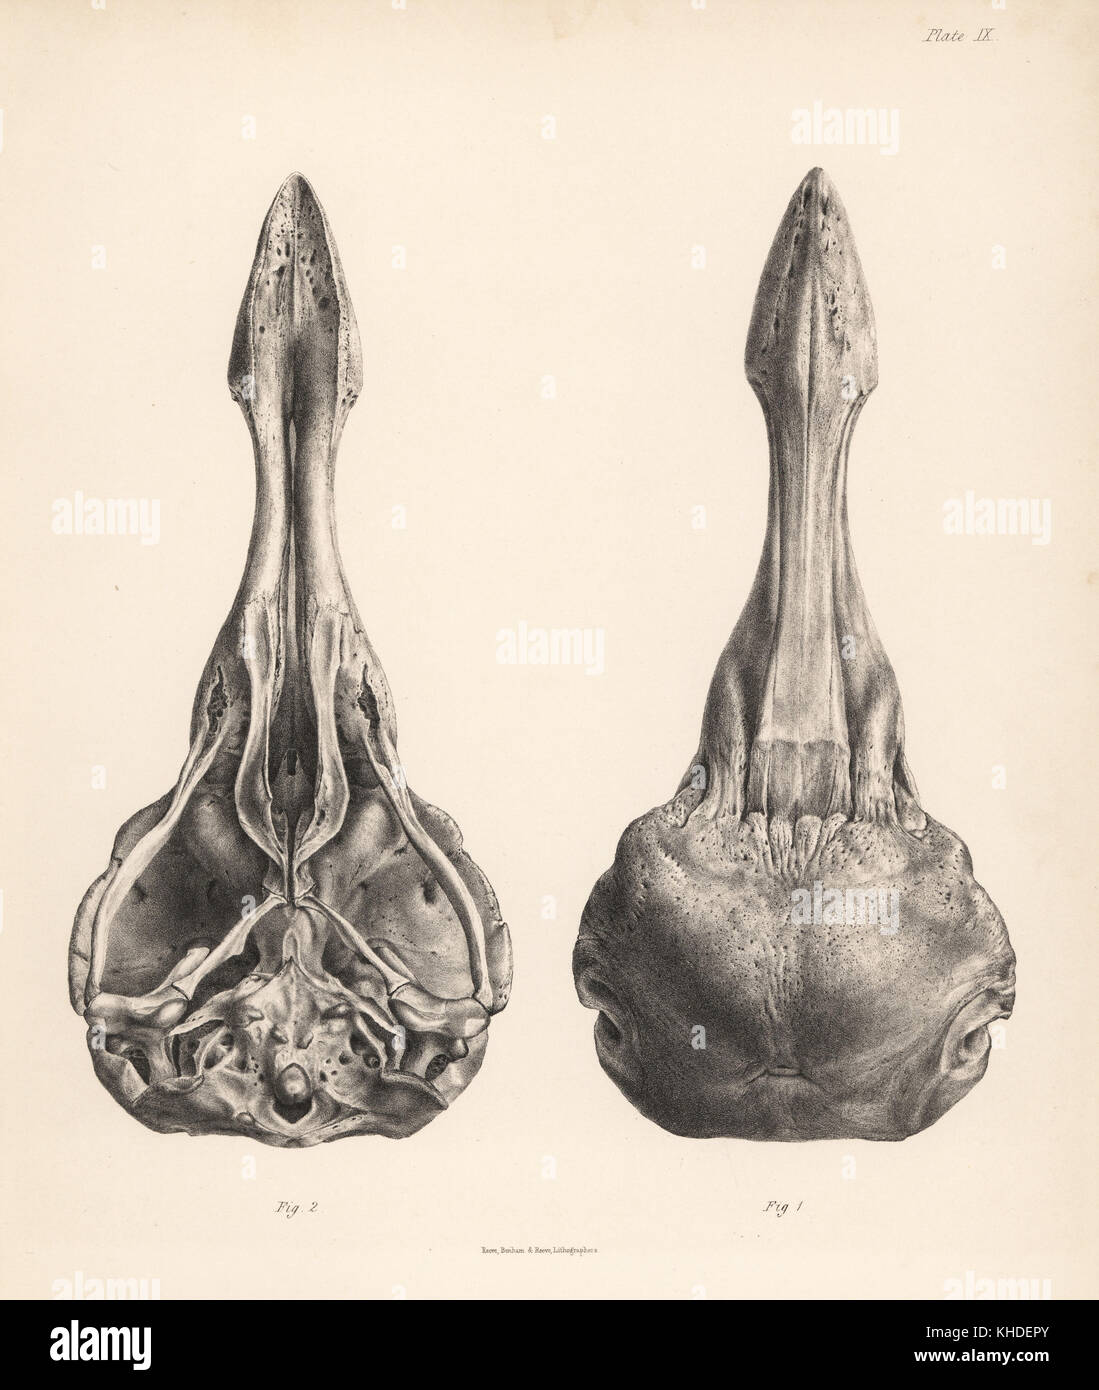 Vues supérieure et inférieure du crâne d'un dodo. Lithographie de Hugh Edwin Strickland et Alexander Gordon Melville, le Dodo et sa famille, Londres, Reeve, Benham et Reeve, 1848. Banque D'Images